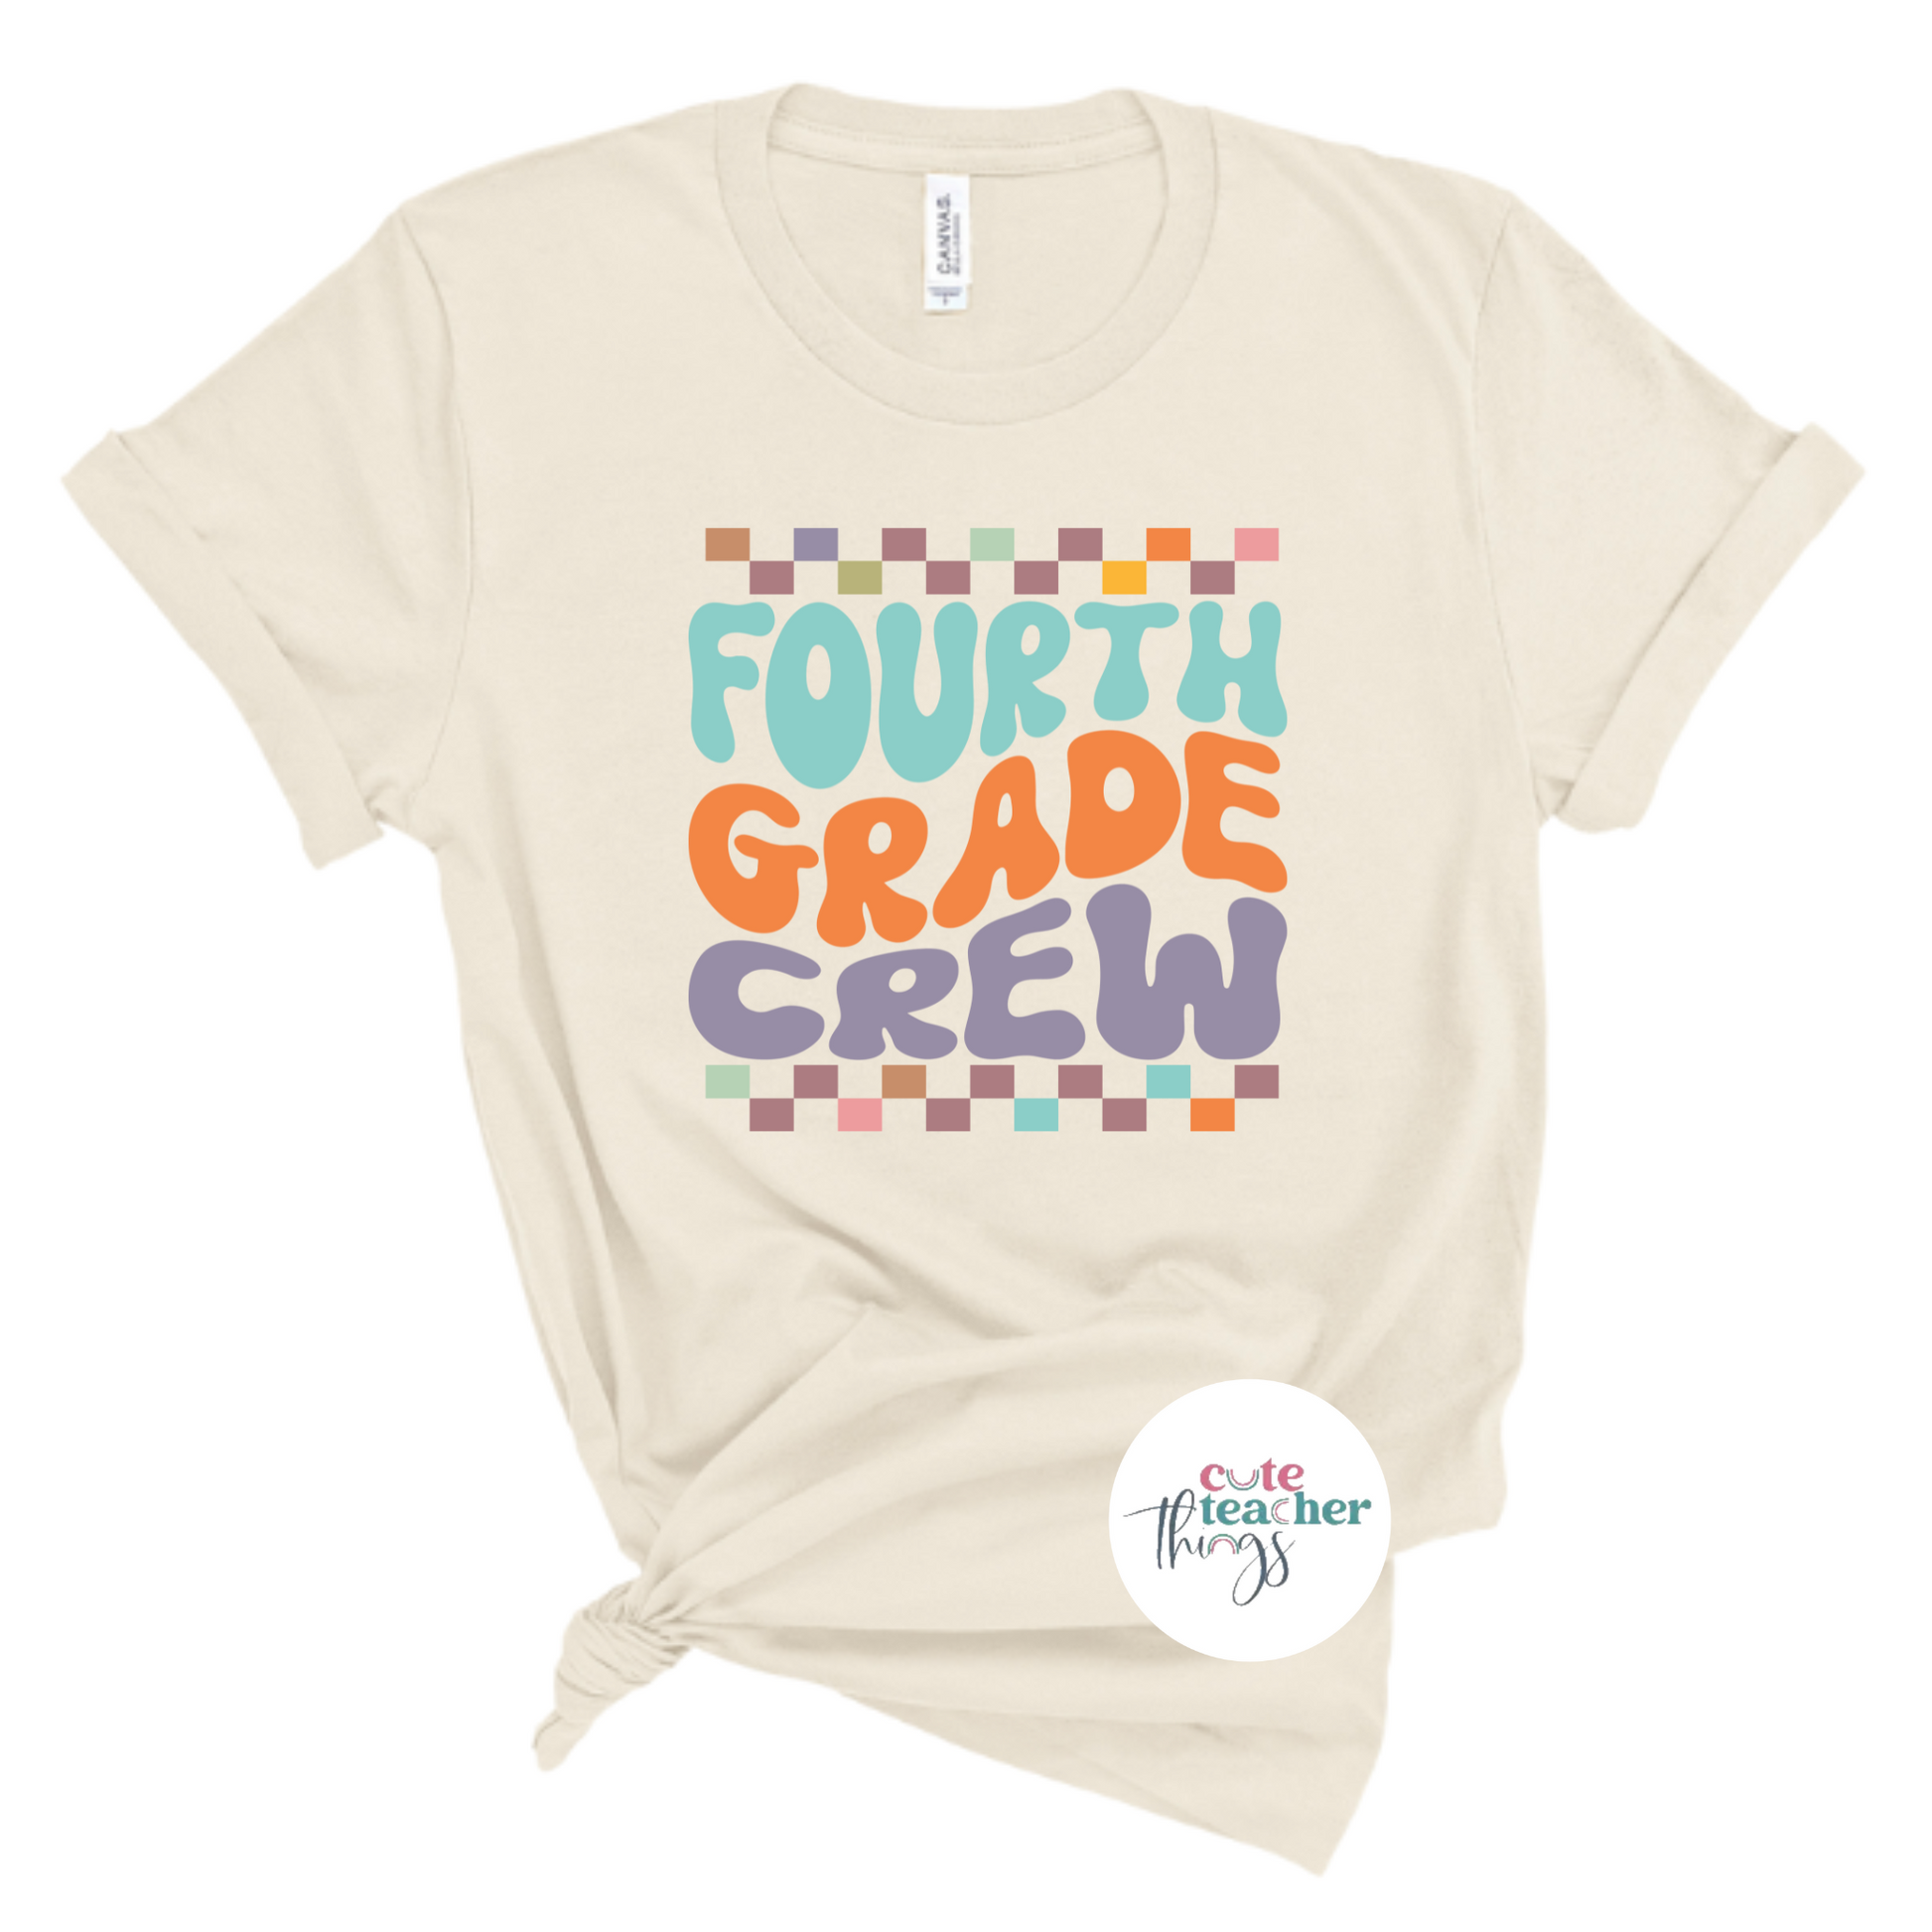 fourth grade teacher tee, teacher gift, school staff shirt